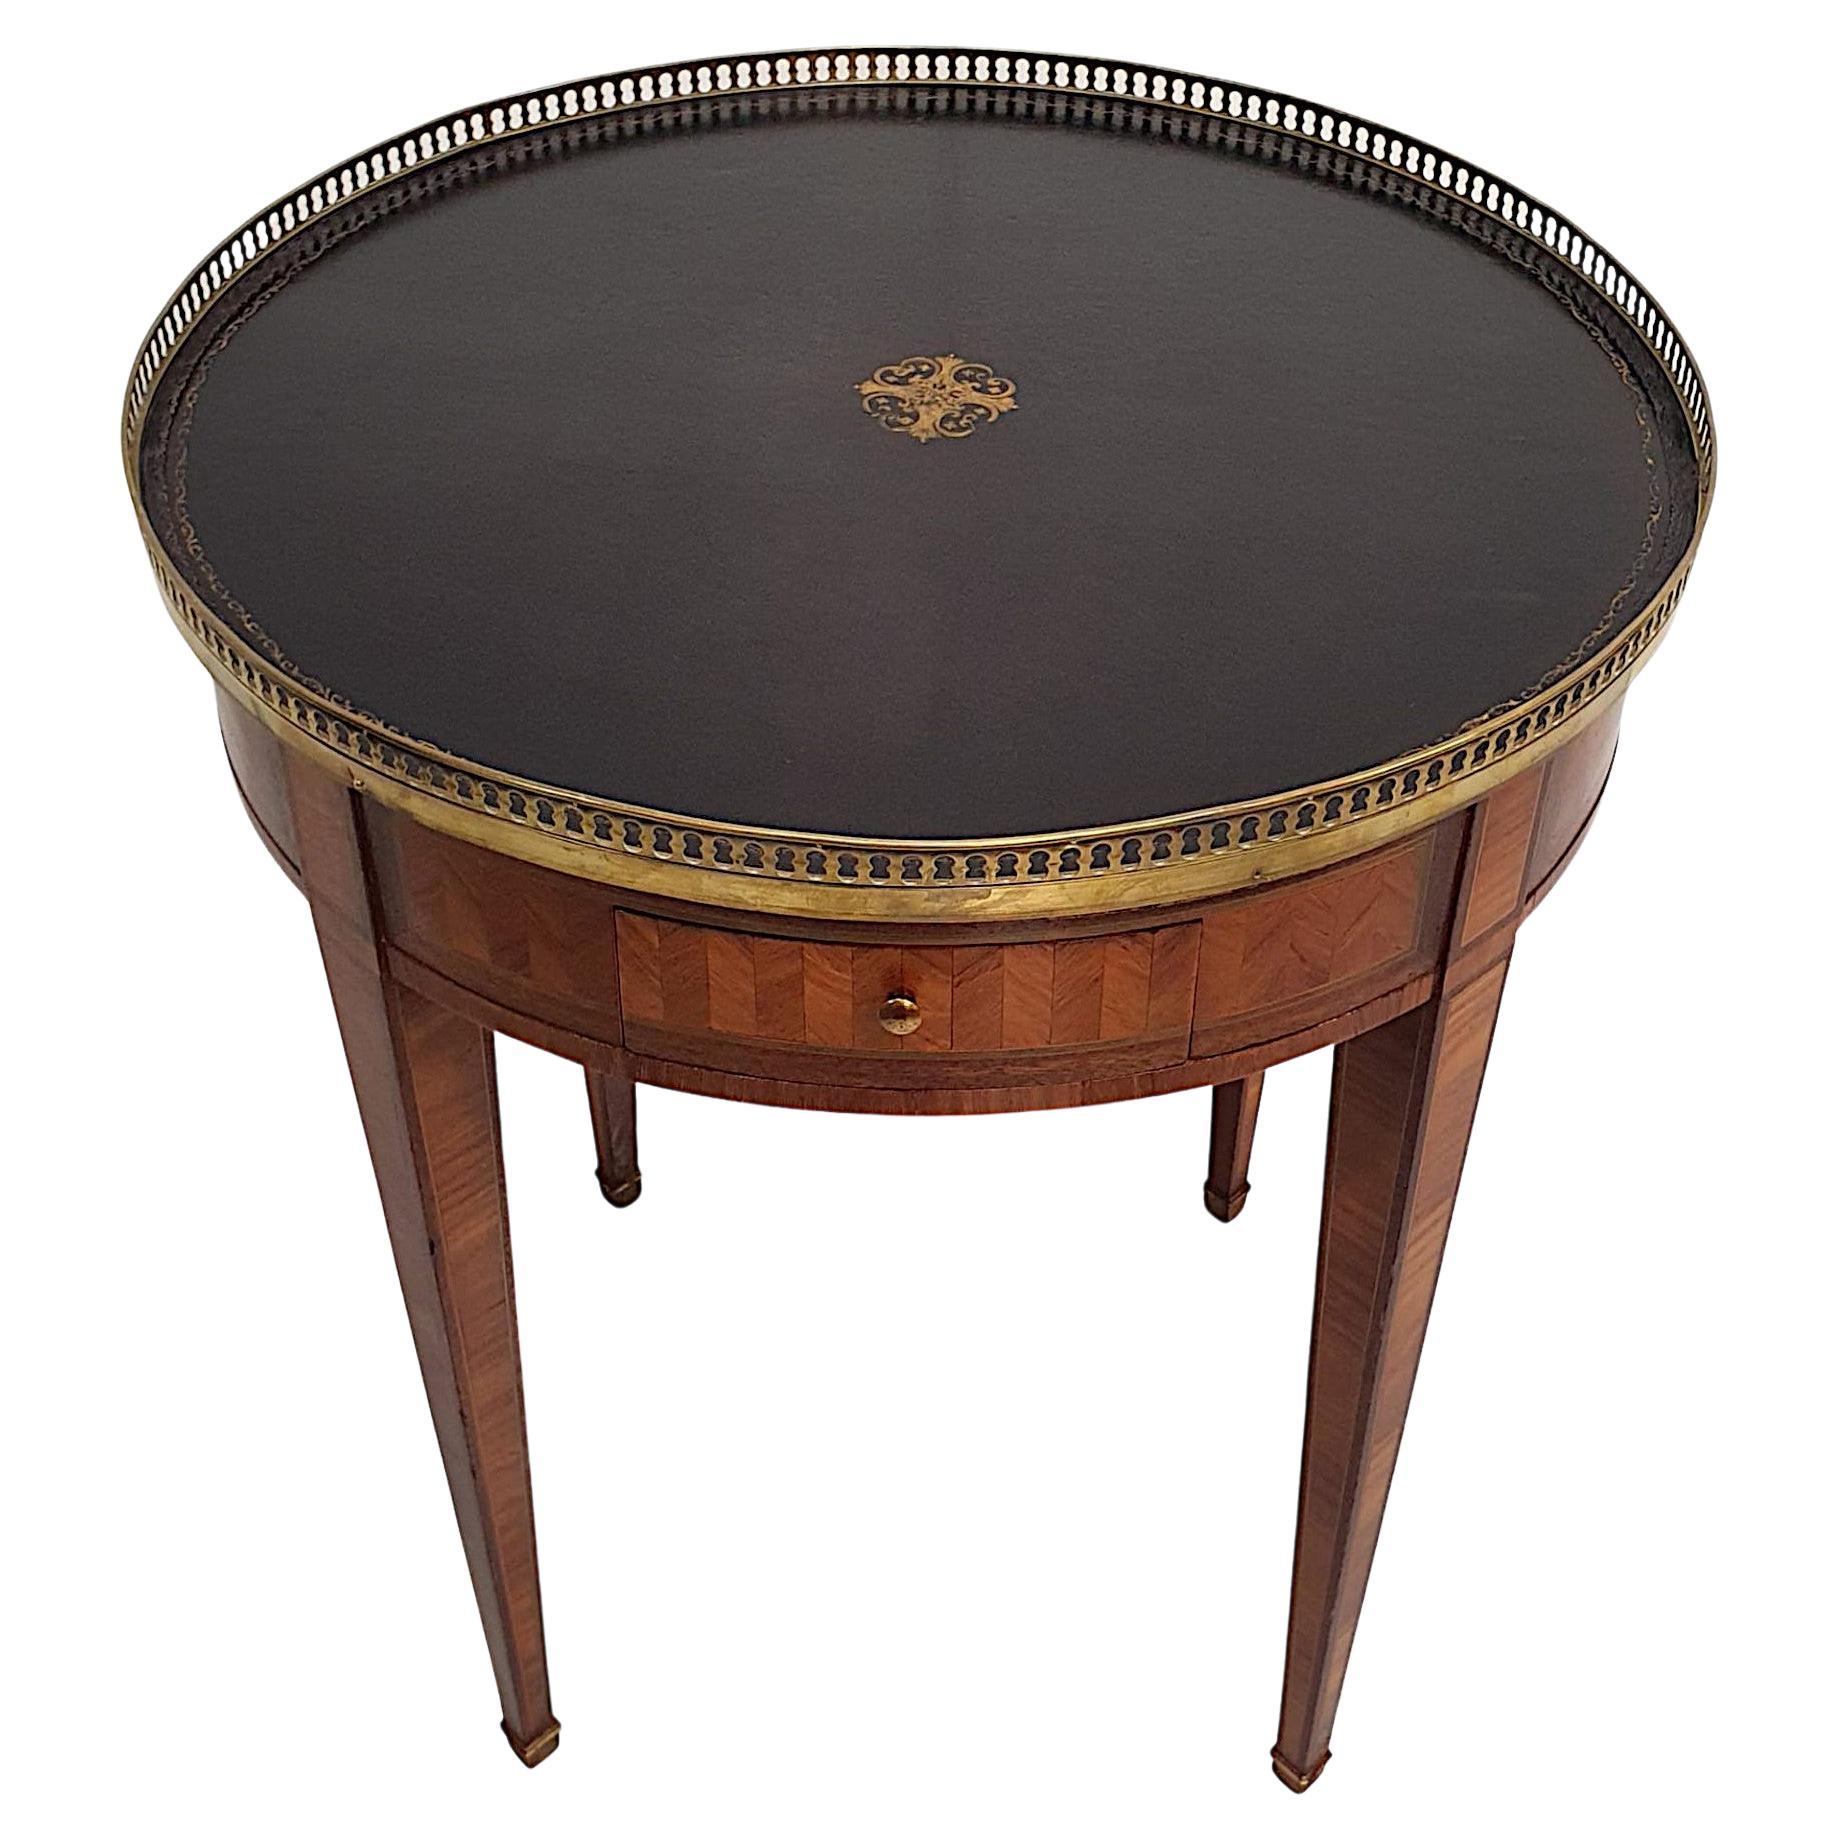  Magnifique table centrale en cuir de l'époque édouardienne